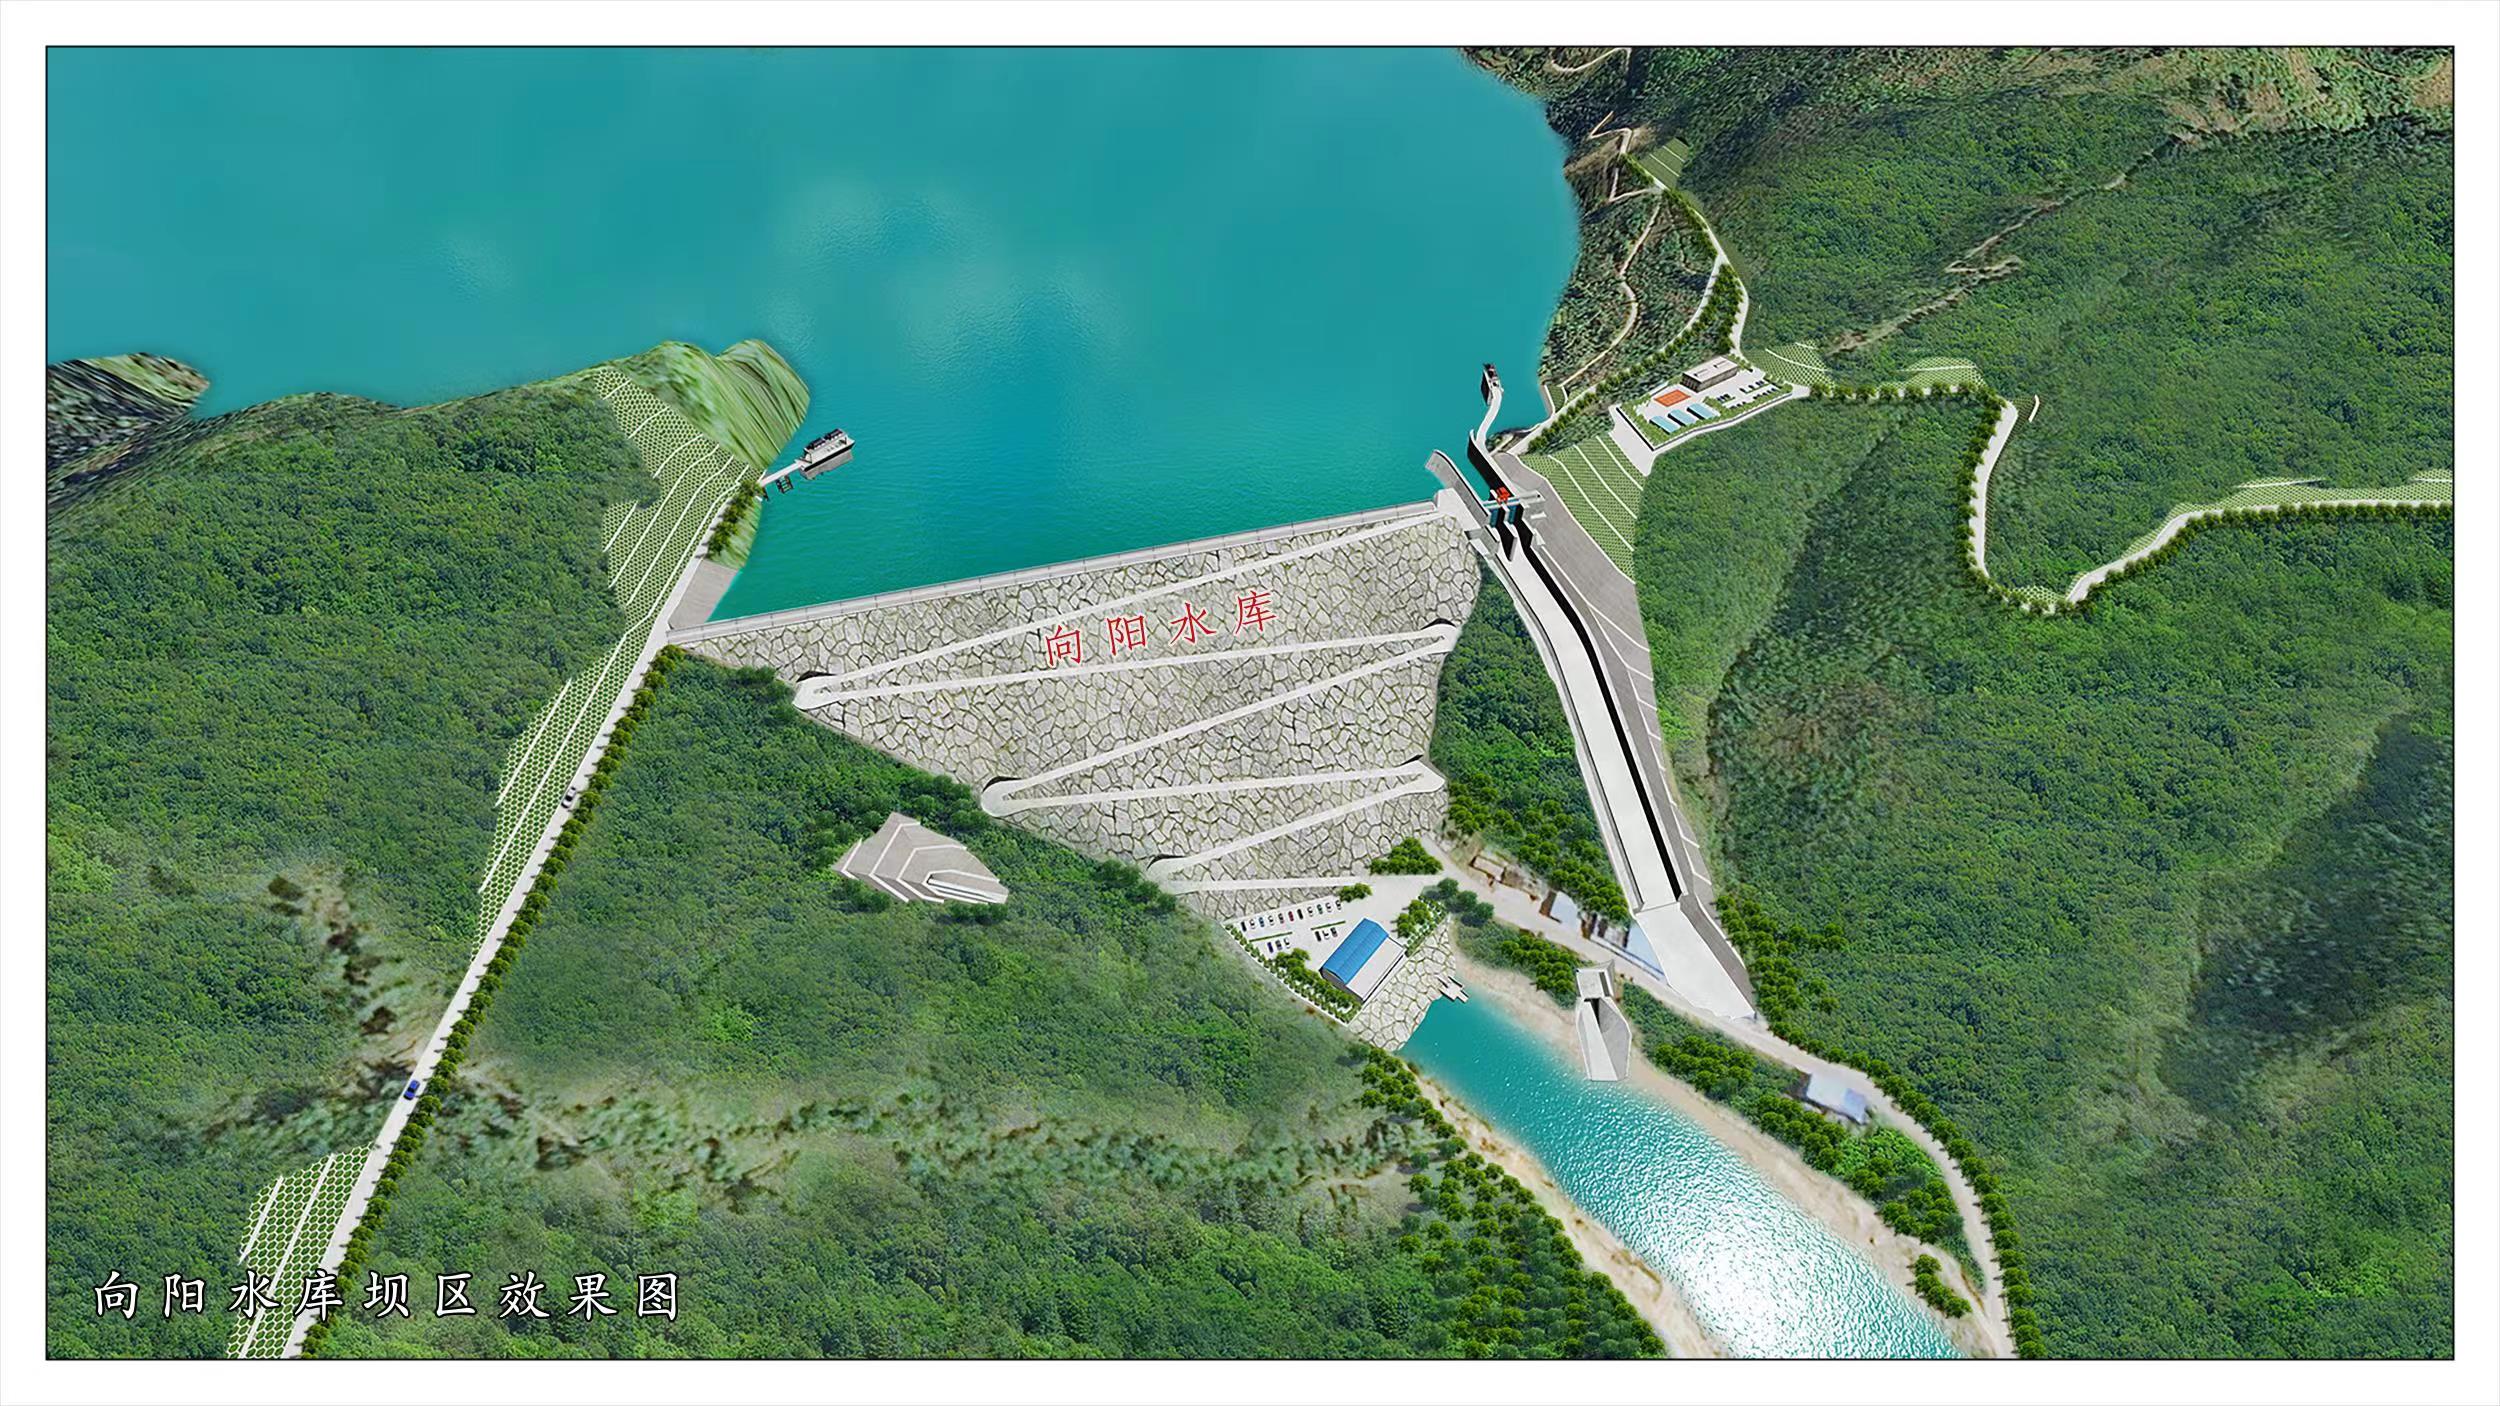 重庆首笔支持国家150项重大水利工程政策性金融工具落地 - 重庆日报网